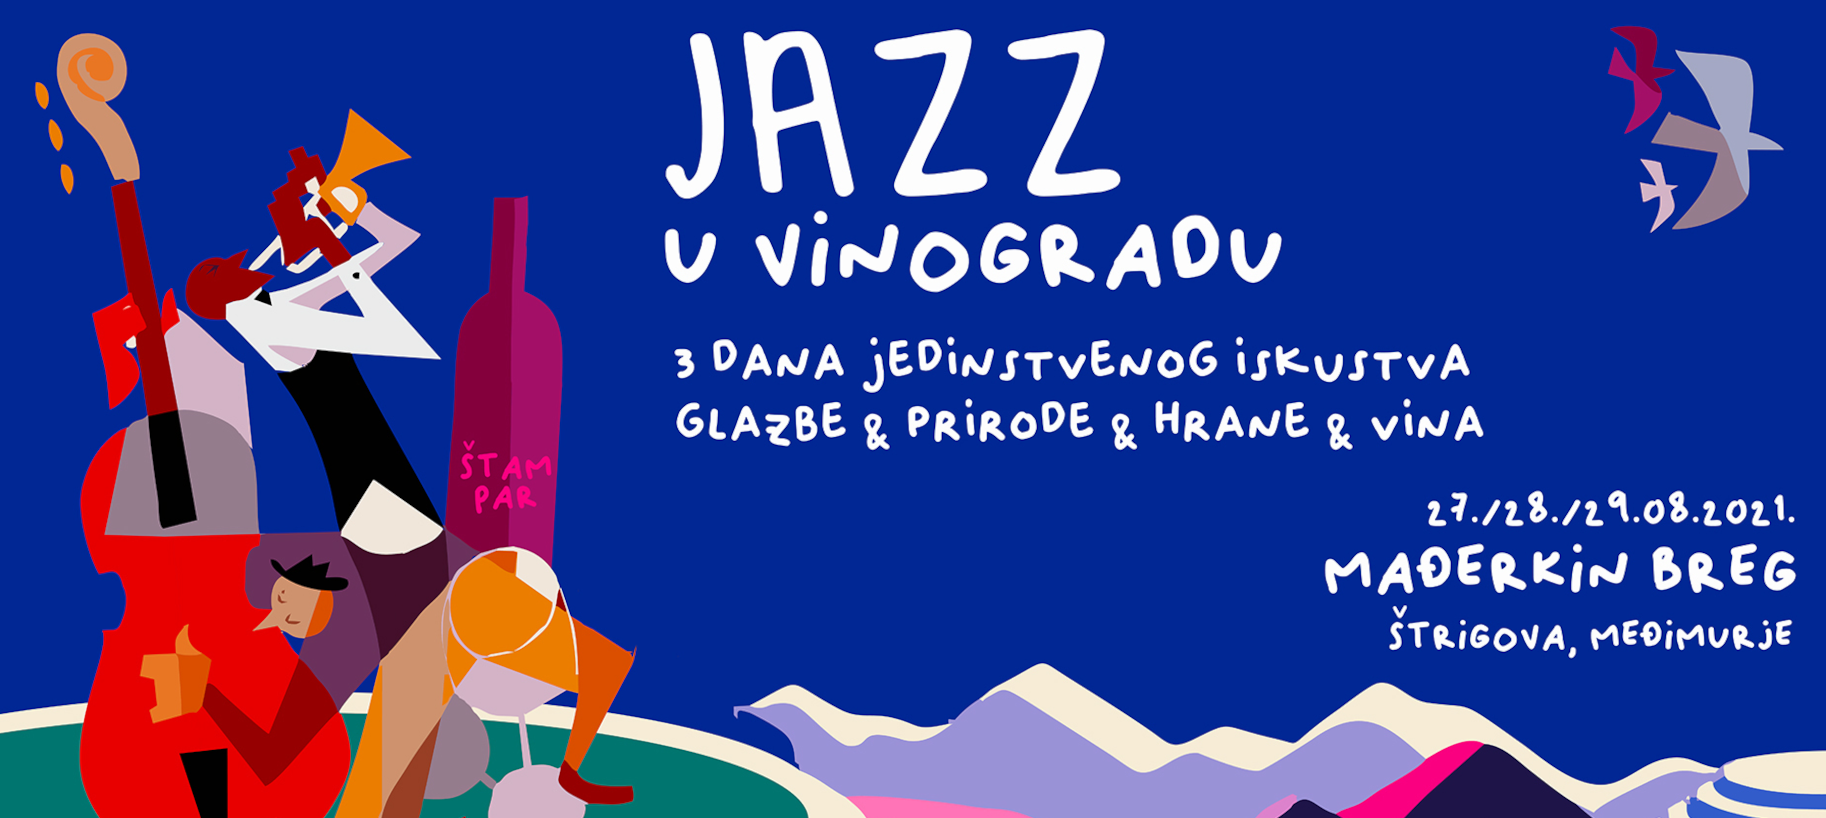 Jazz u Vinogradu